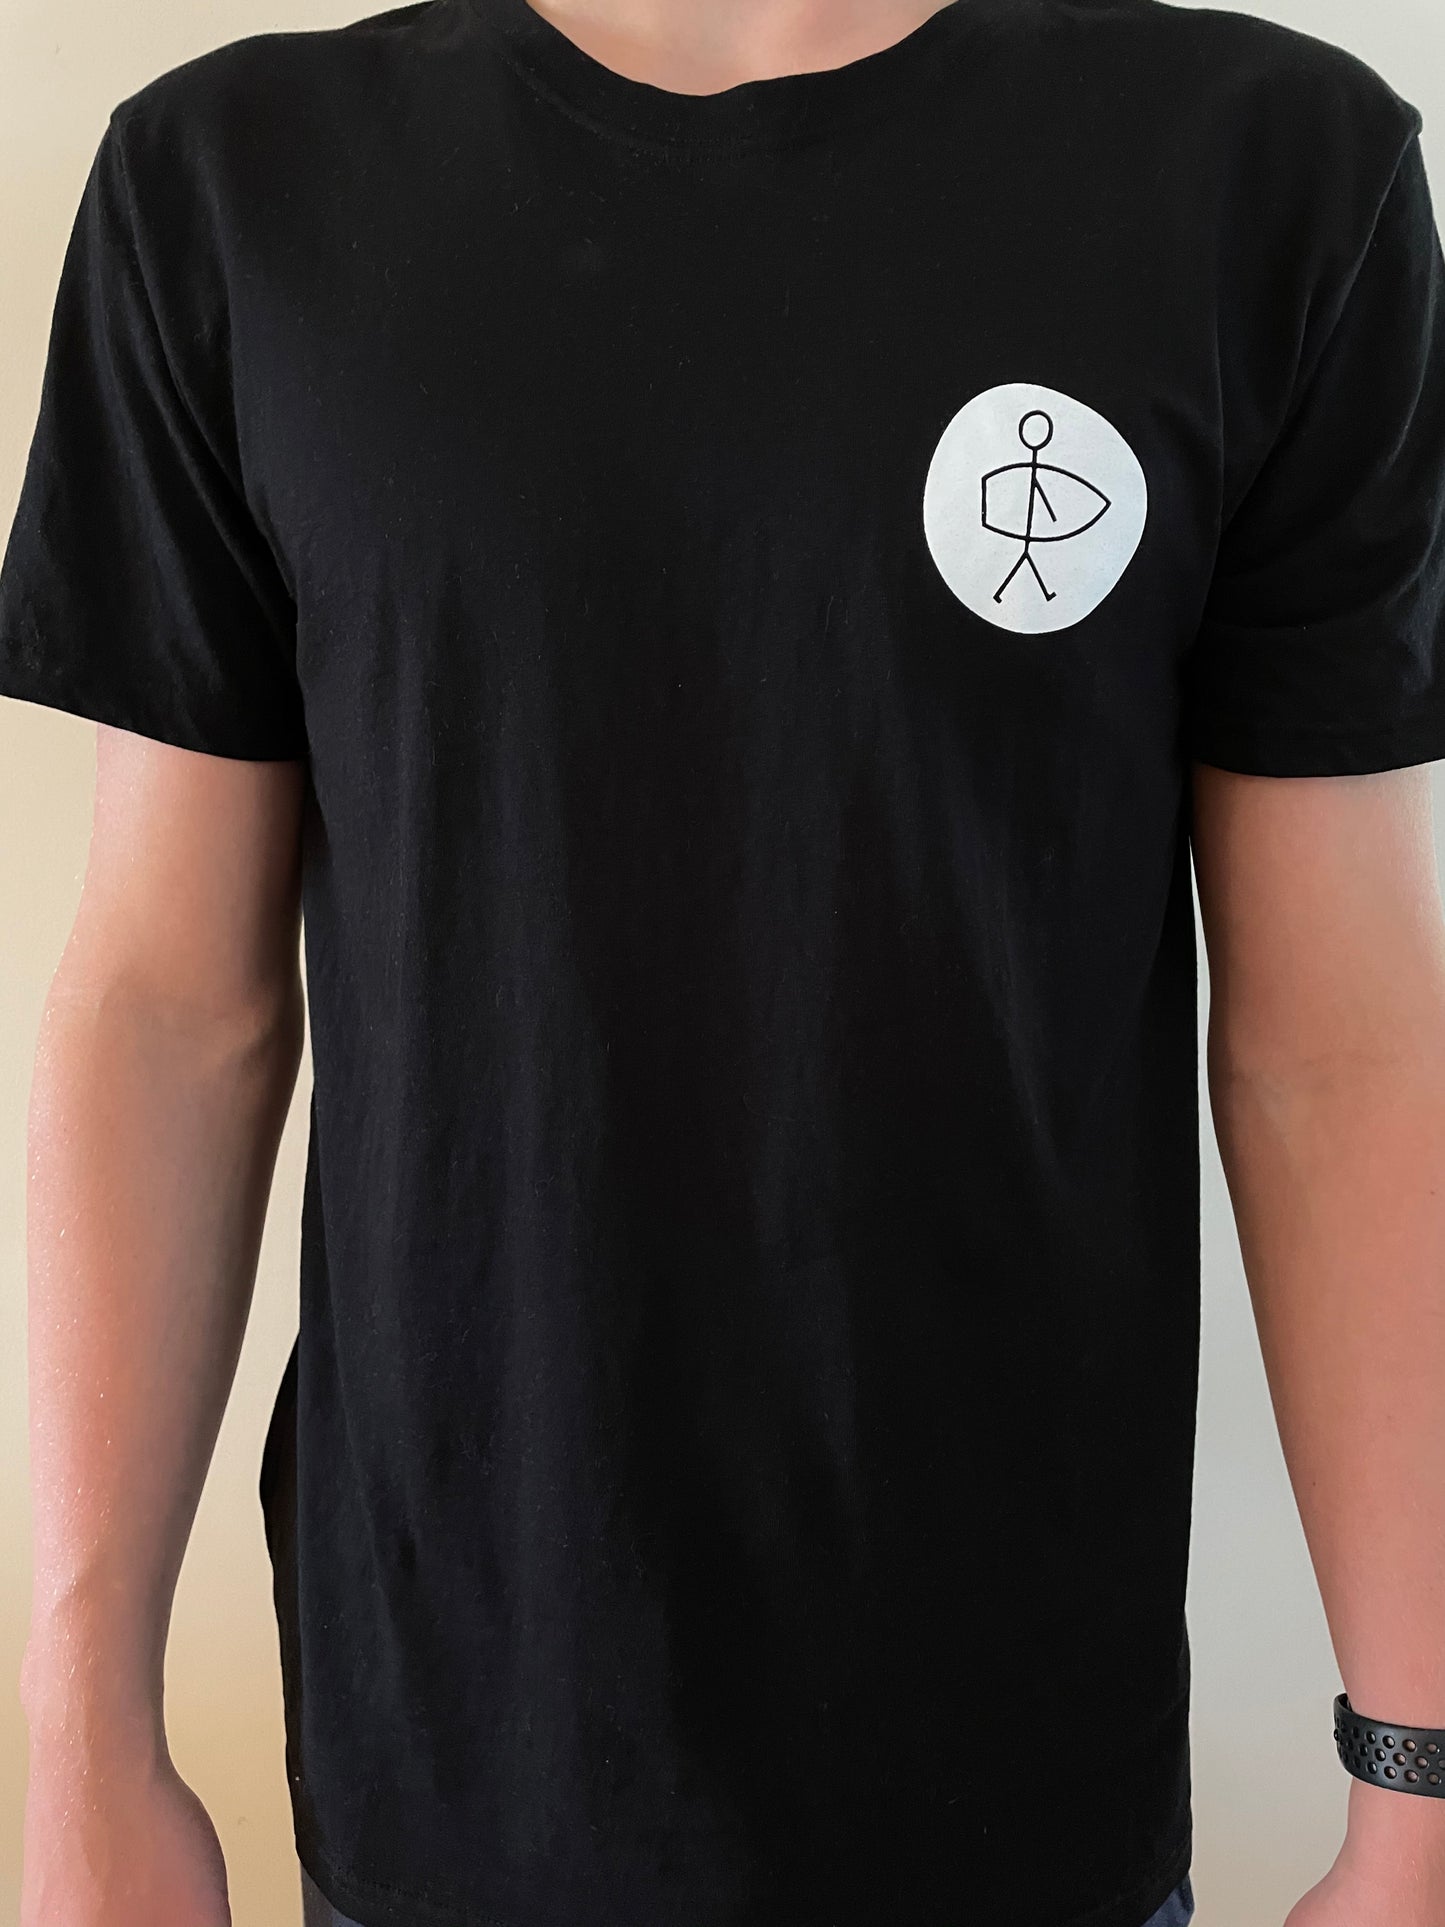 Sticky Pronk T-Shirt, Black